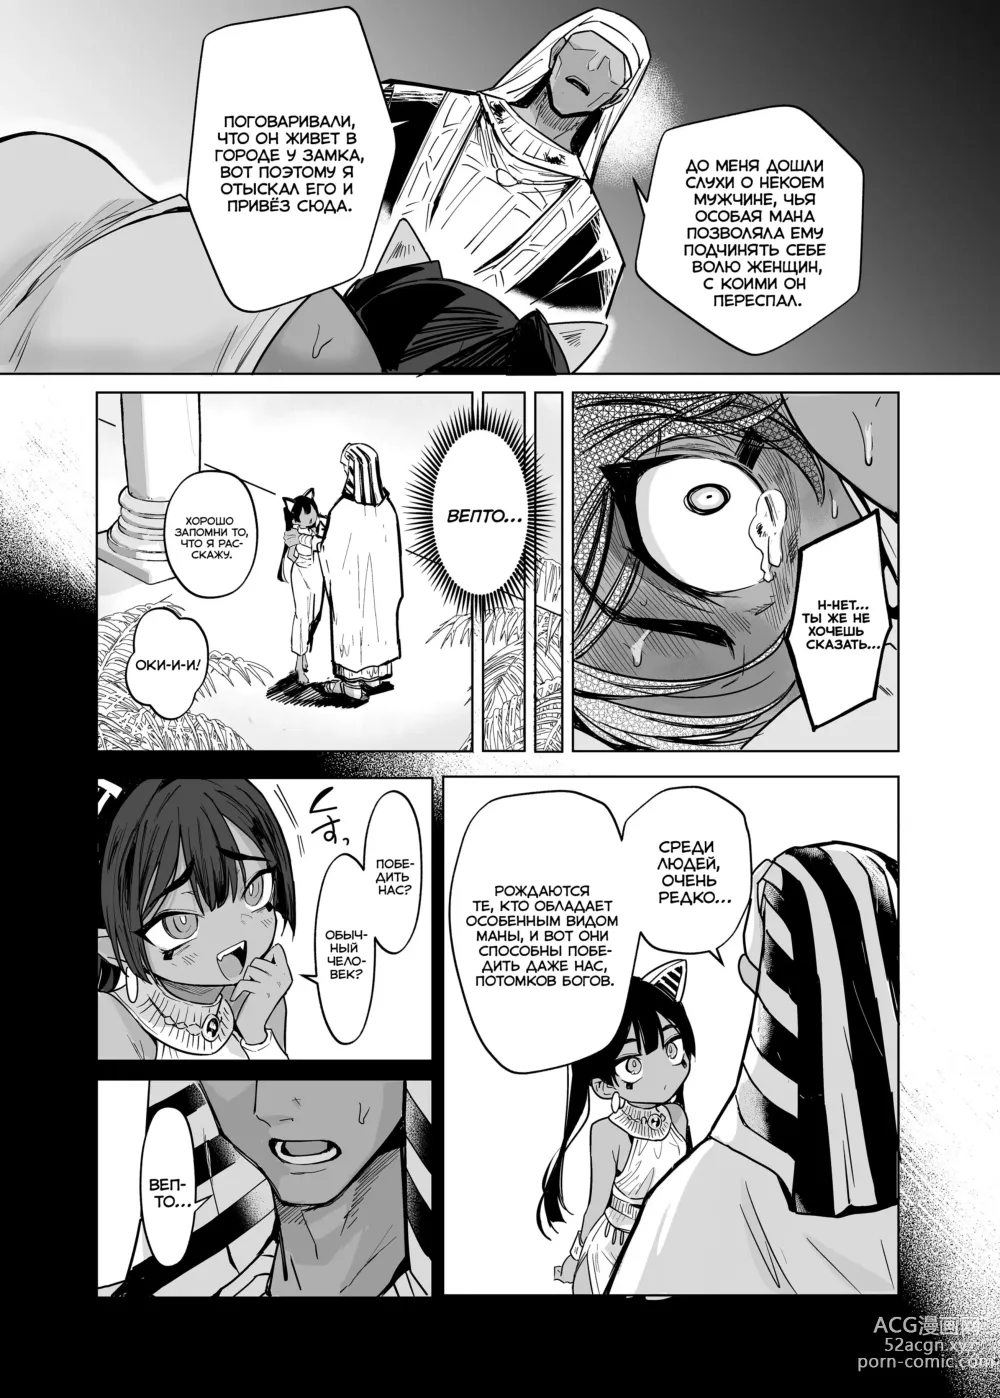 Page 29 of doujinshi Вепто-сама! Не издевайтесь над людьми!